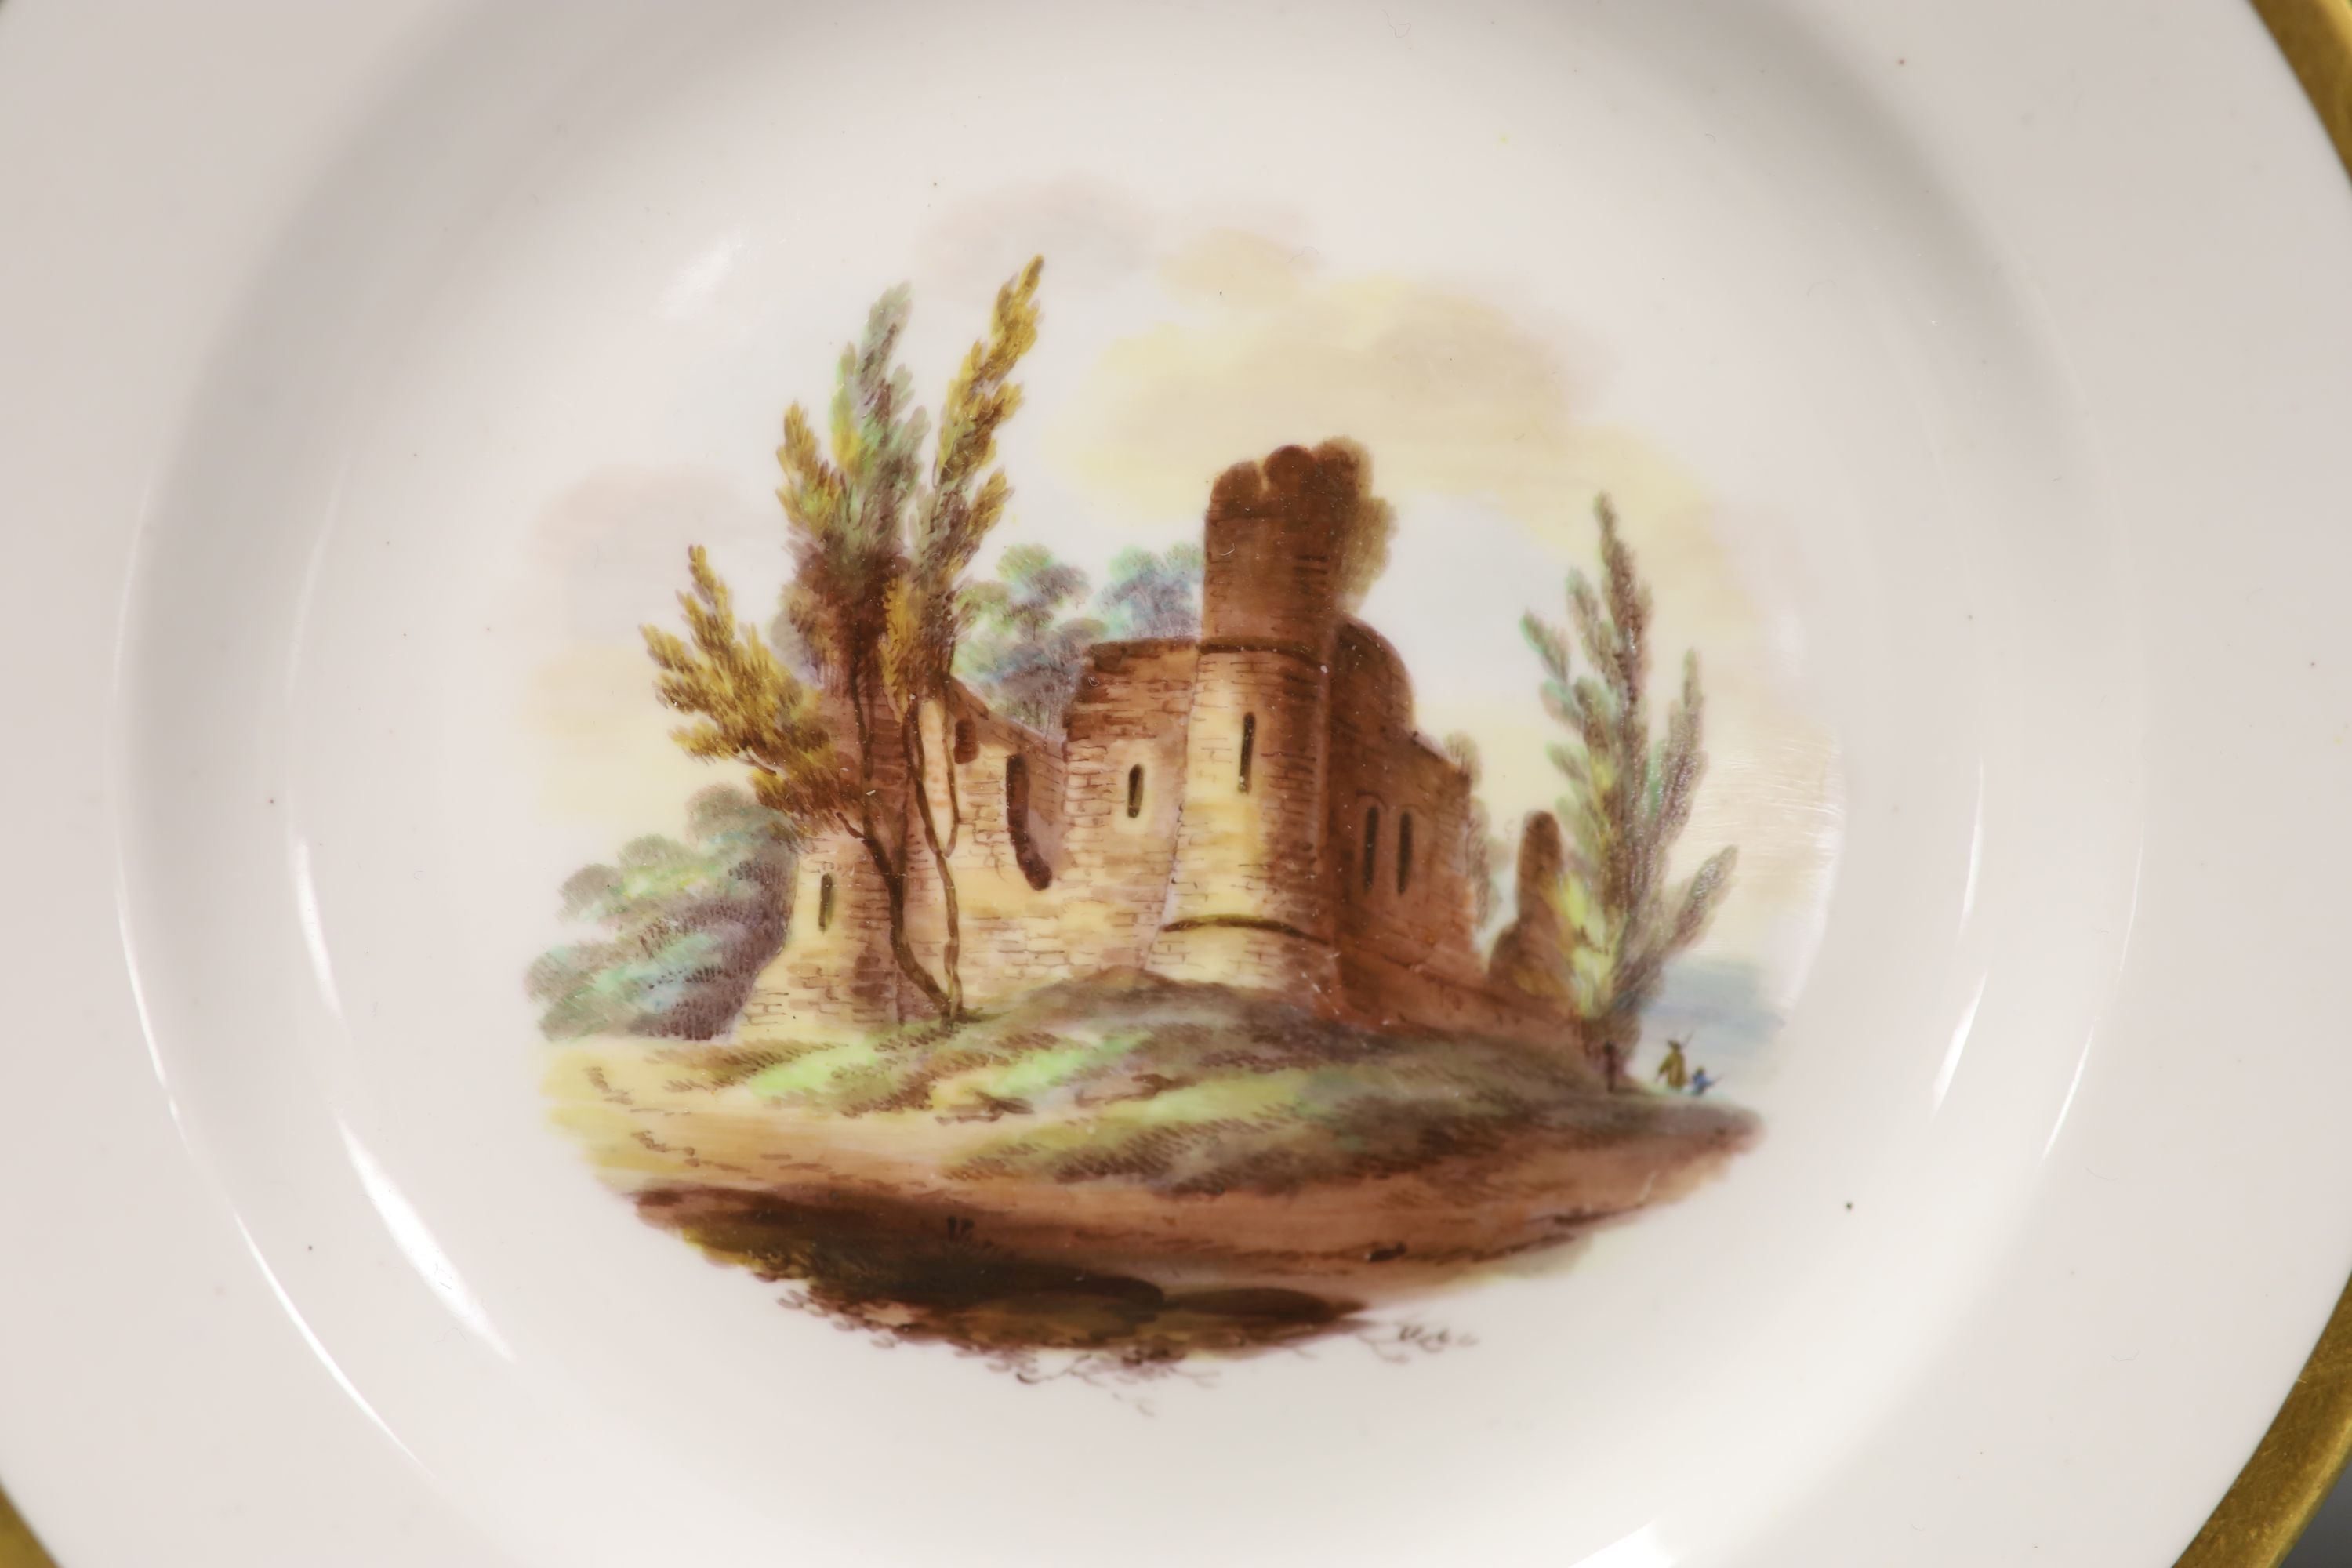 Two Spode painted plates with landscape scenes Conisbrough Castle, Bridge on River Trent, c.1820, diameter 18cm